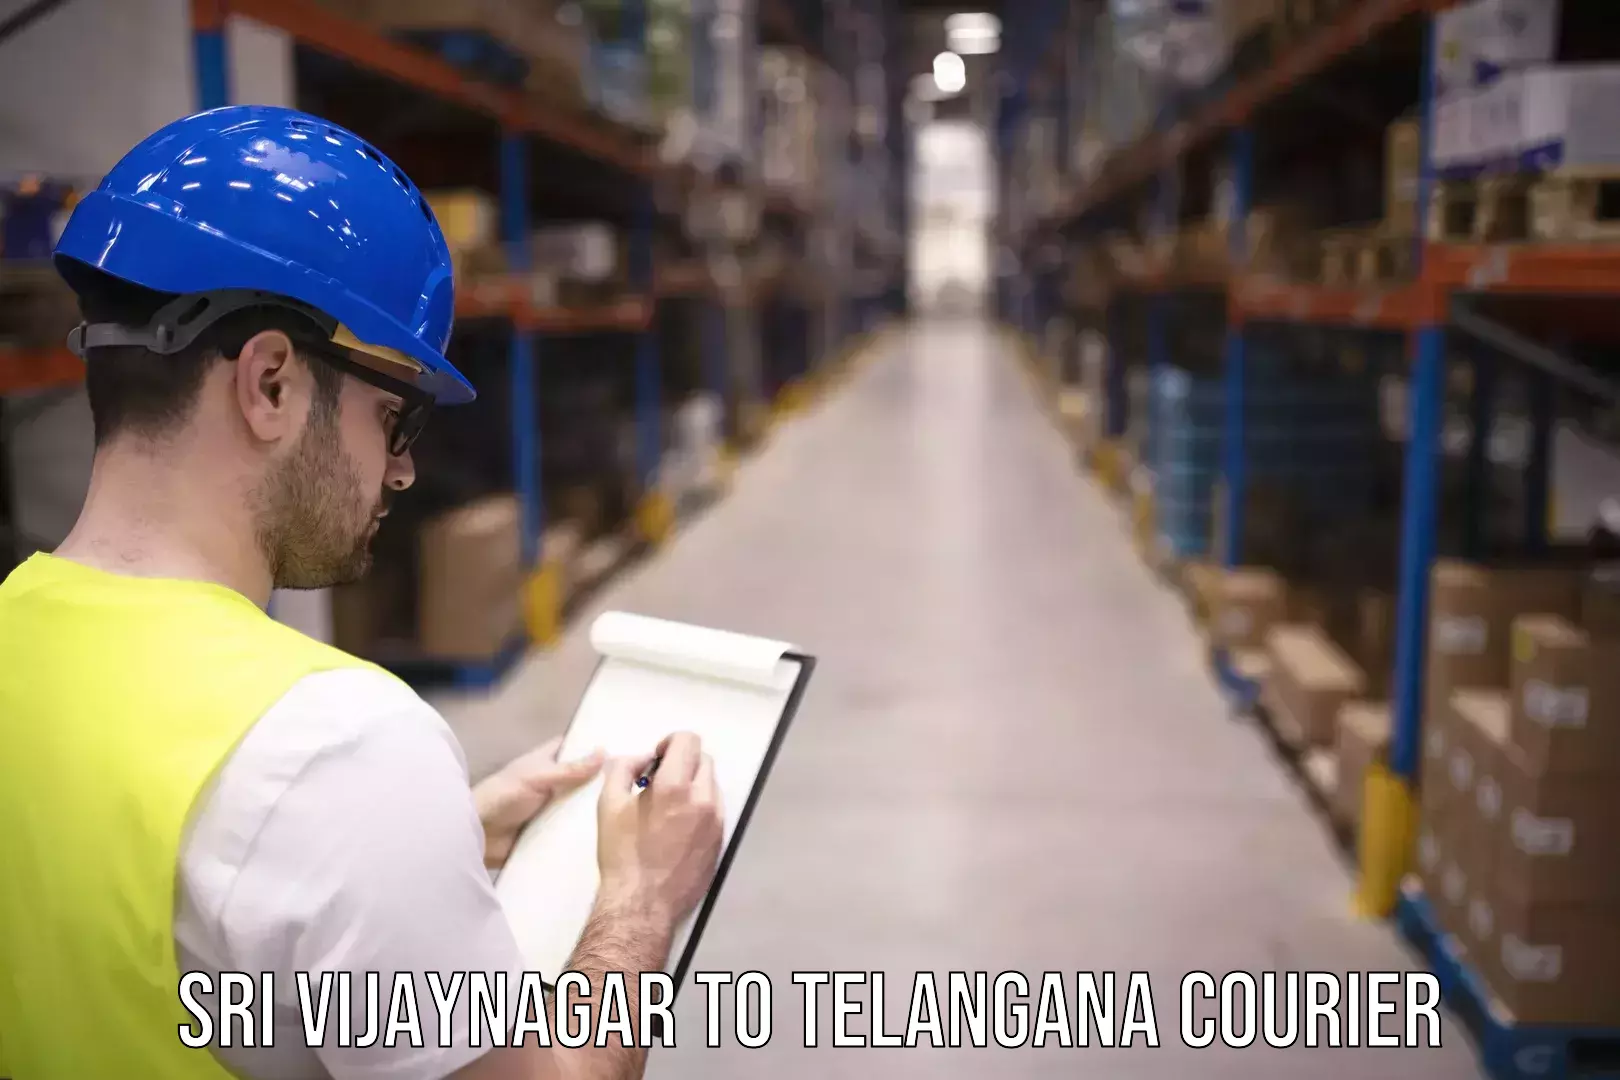 Digital courier platforms Sri Vijaynagar to Eligedu